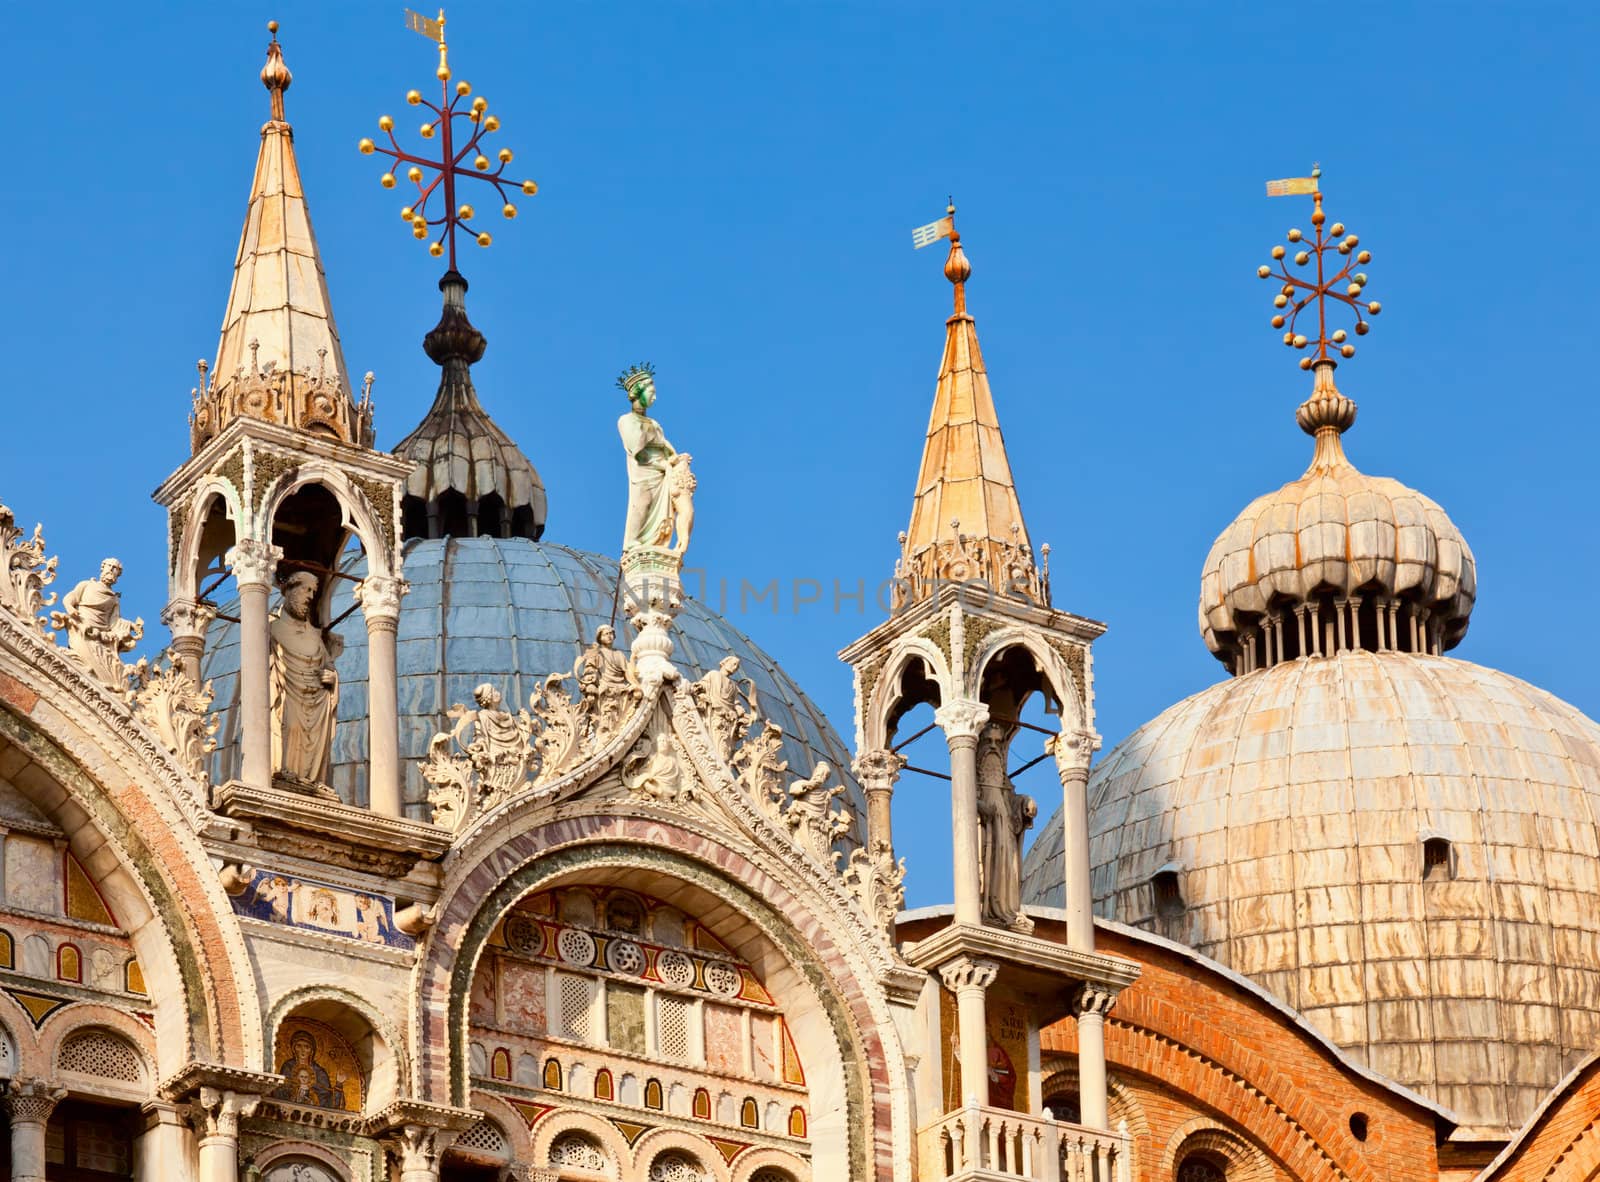 Basilica di San Marco detail by naumoid